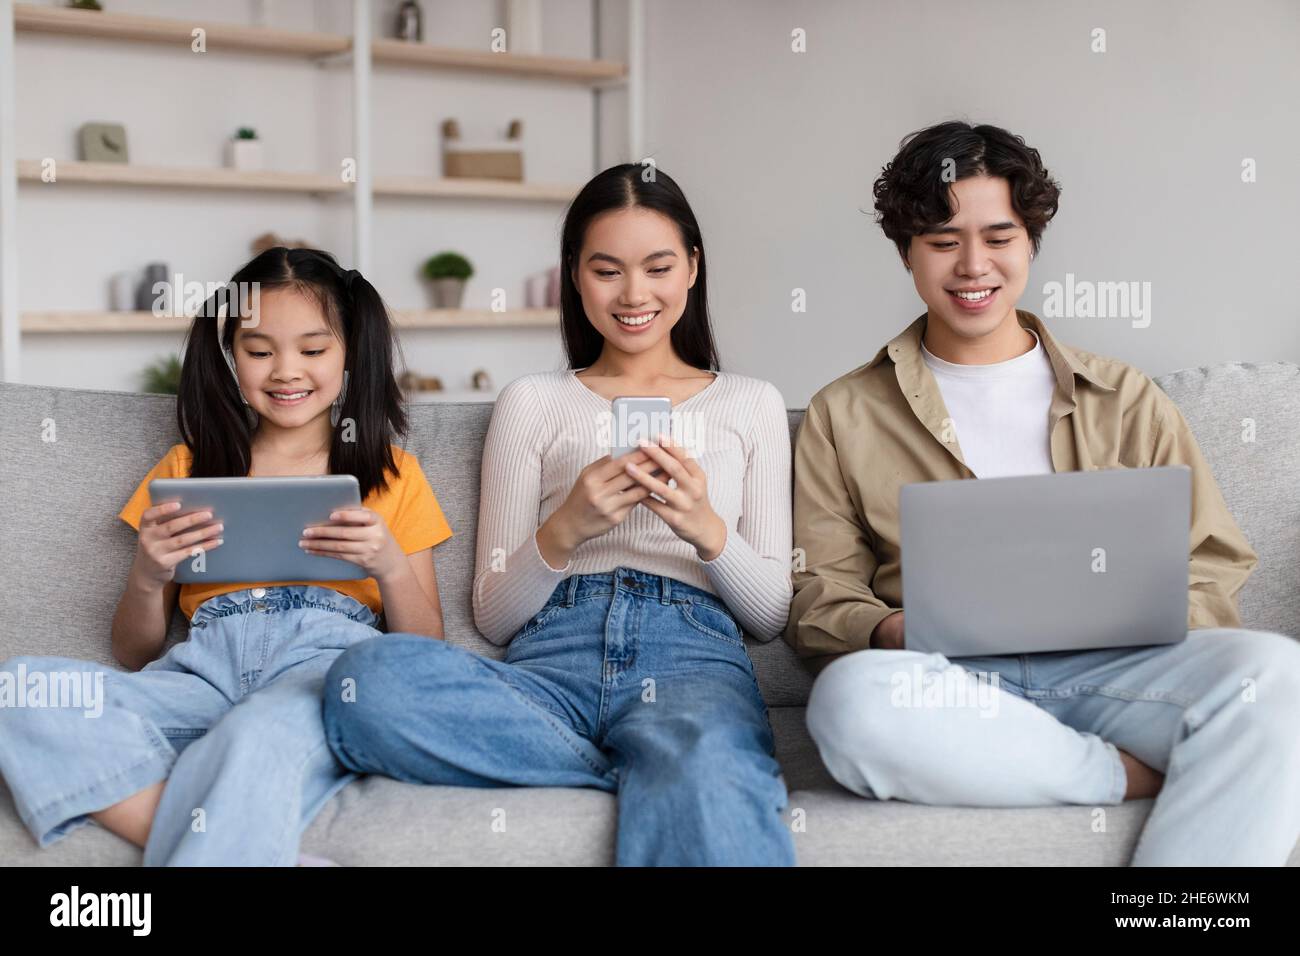 Lächelndes Teenager-Kind und junge asiatische Mutter und Vater surfen im Internet, chatten auf Gadgets, spielen Spiel Stockfoto